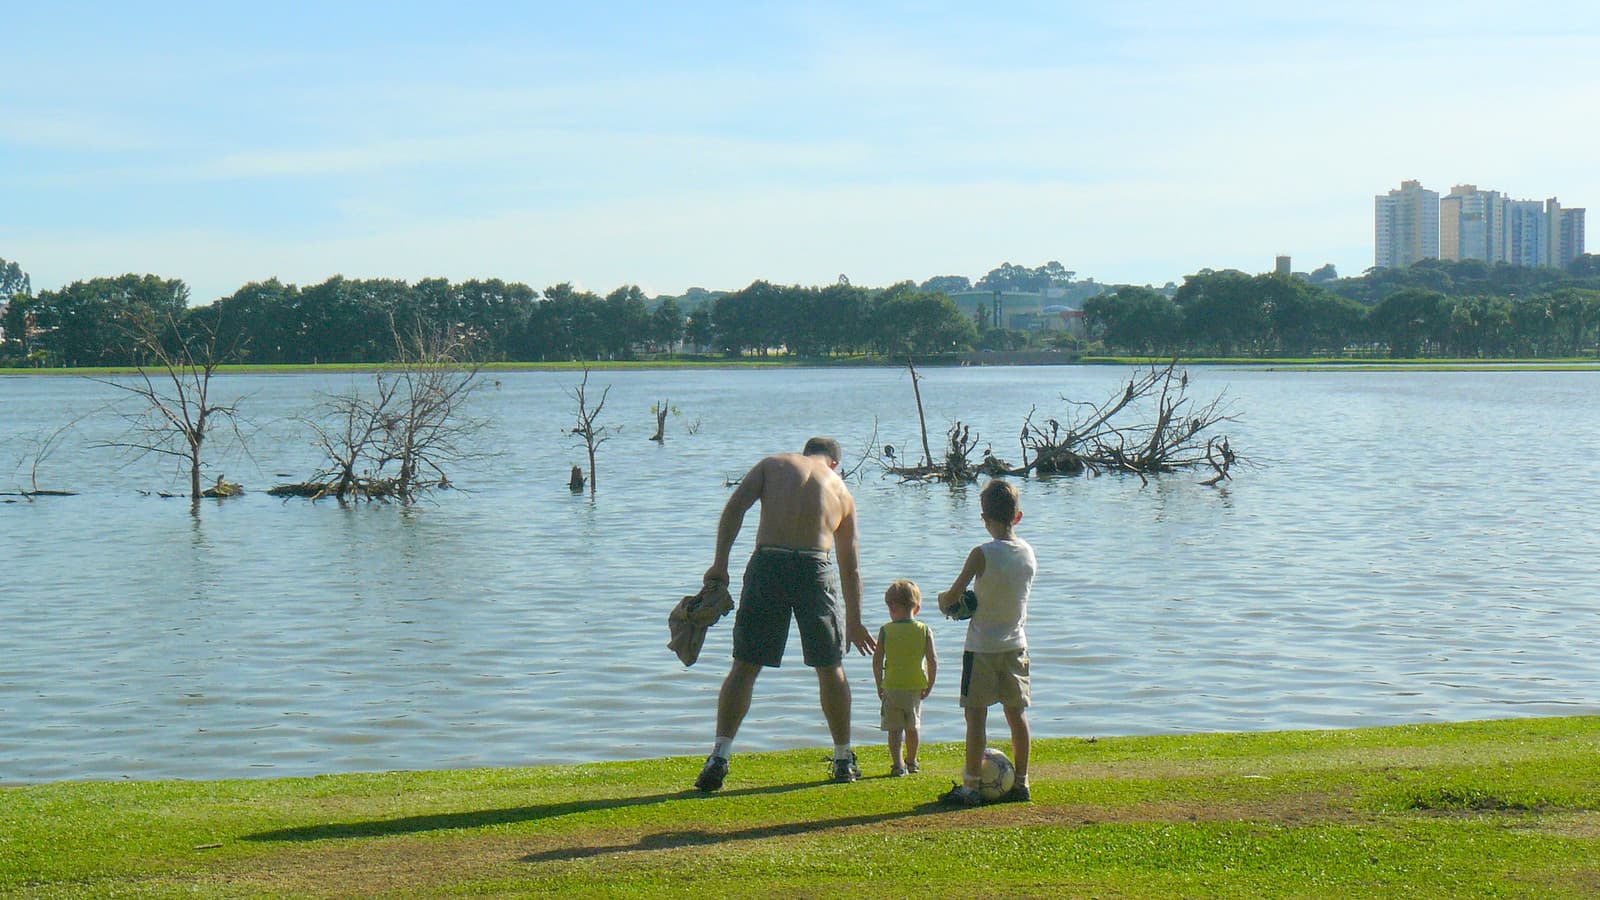 Parque Lago Azul